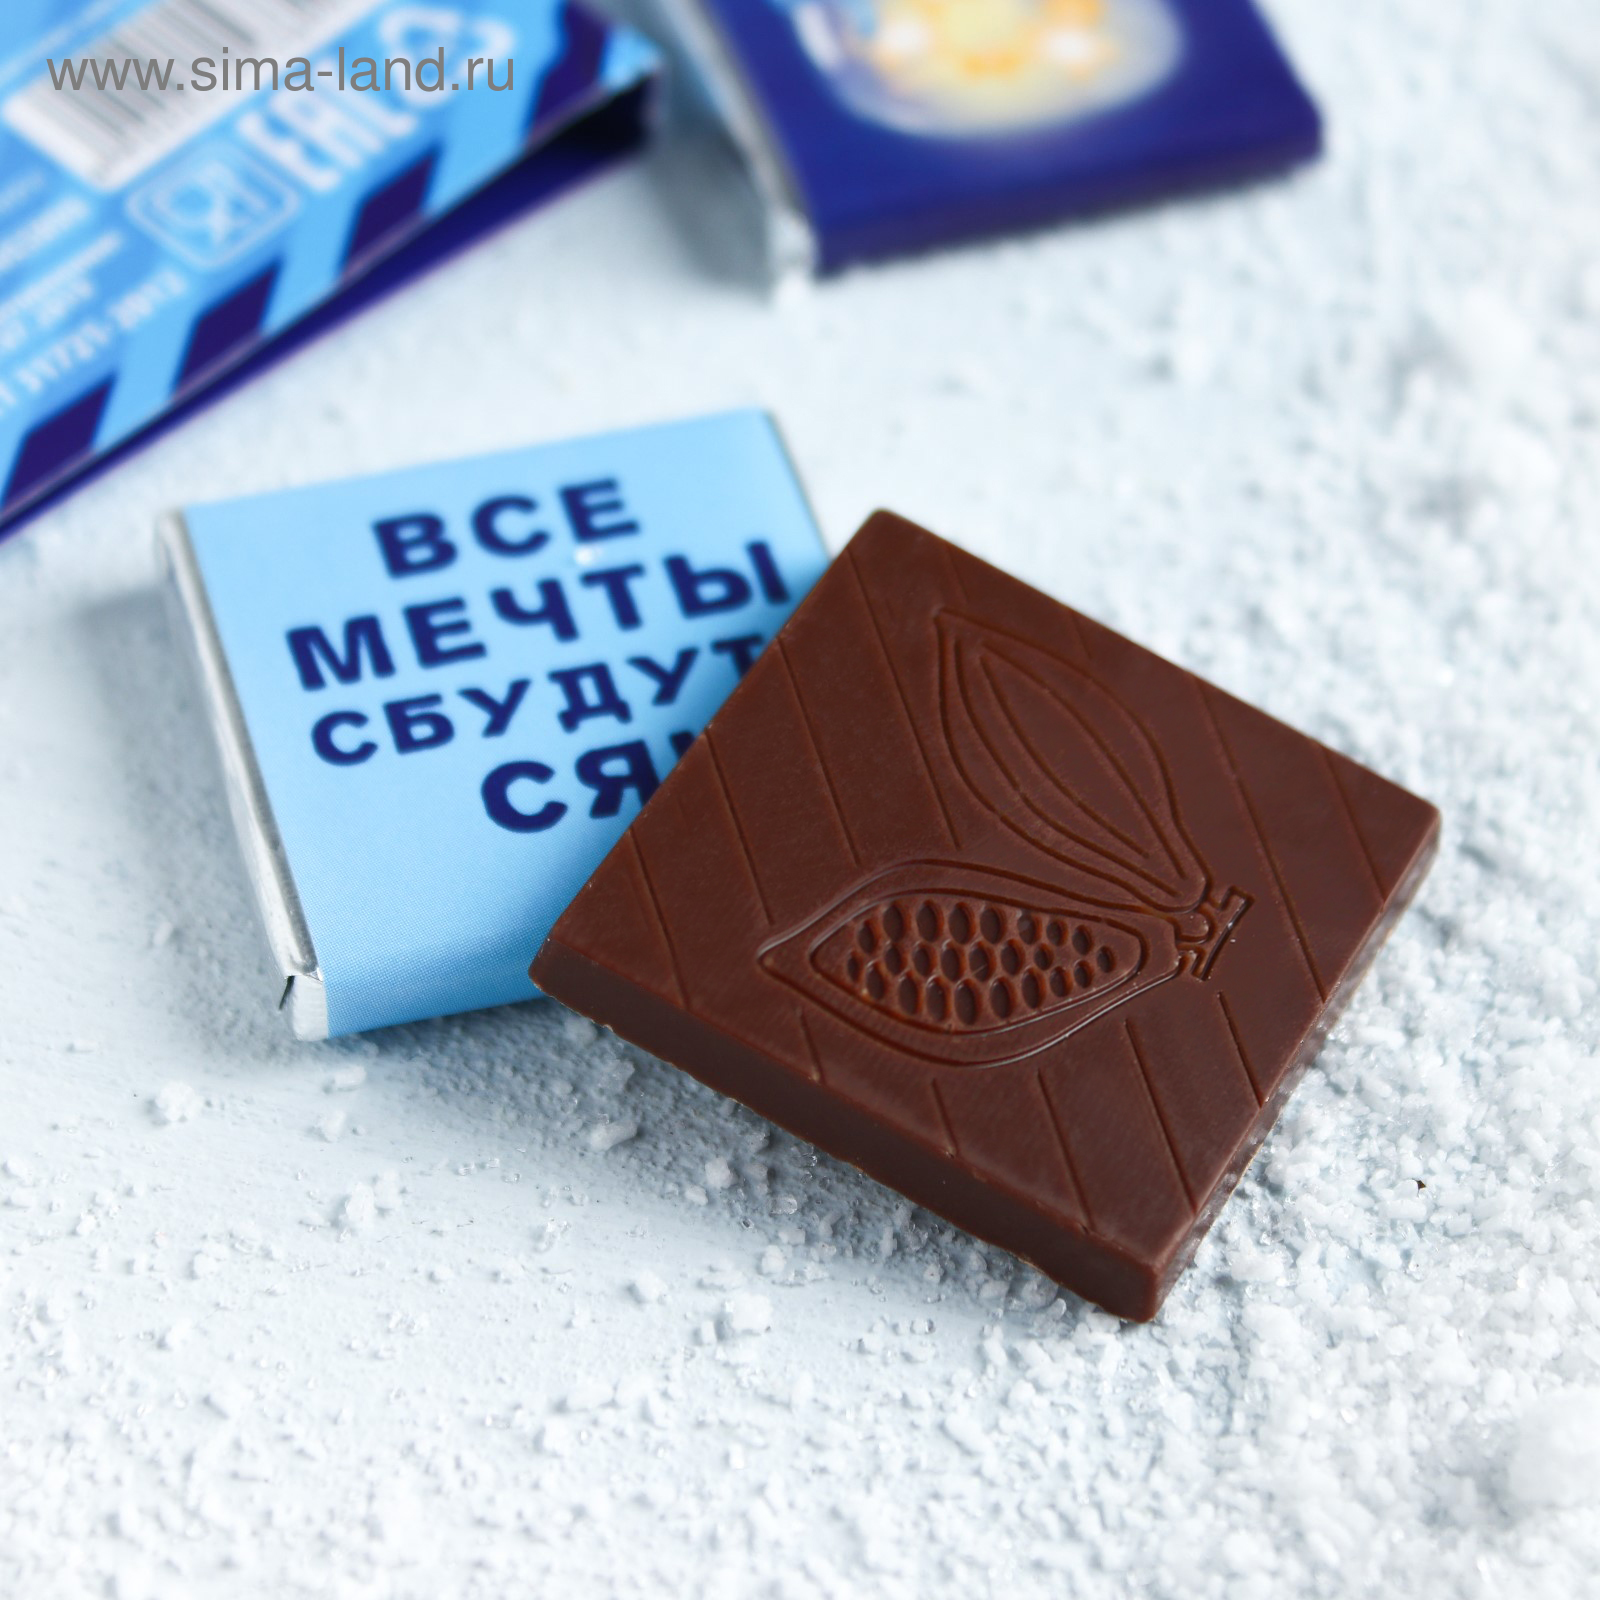 Шоколад квадрат. Мини шоколадки. Шоколадки с логотипом. Маленькие шоколадки. Небольшие шоколадки.